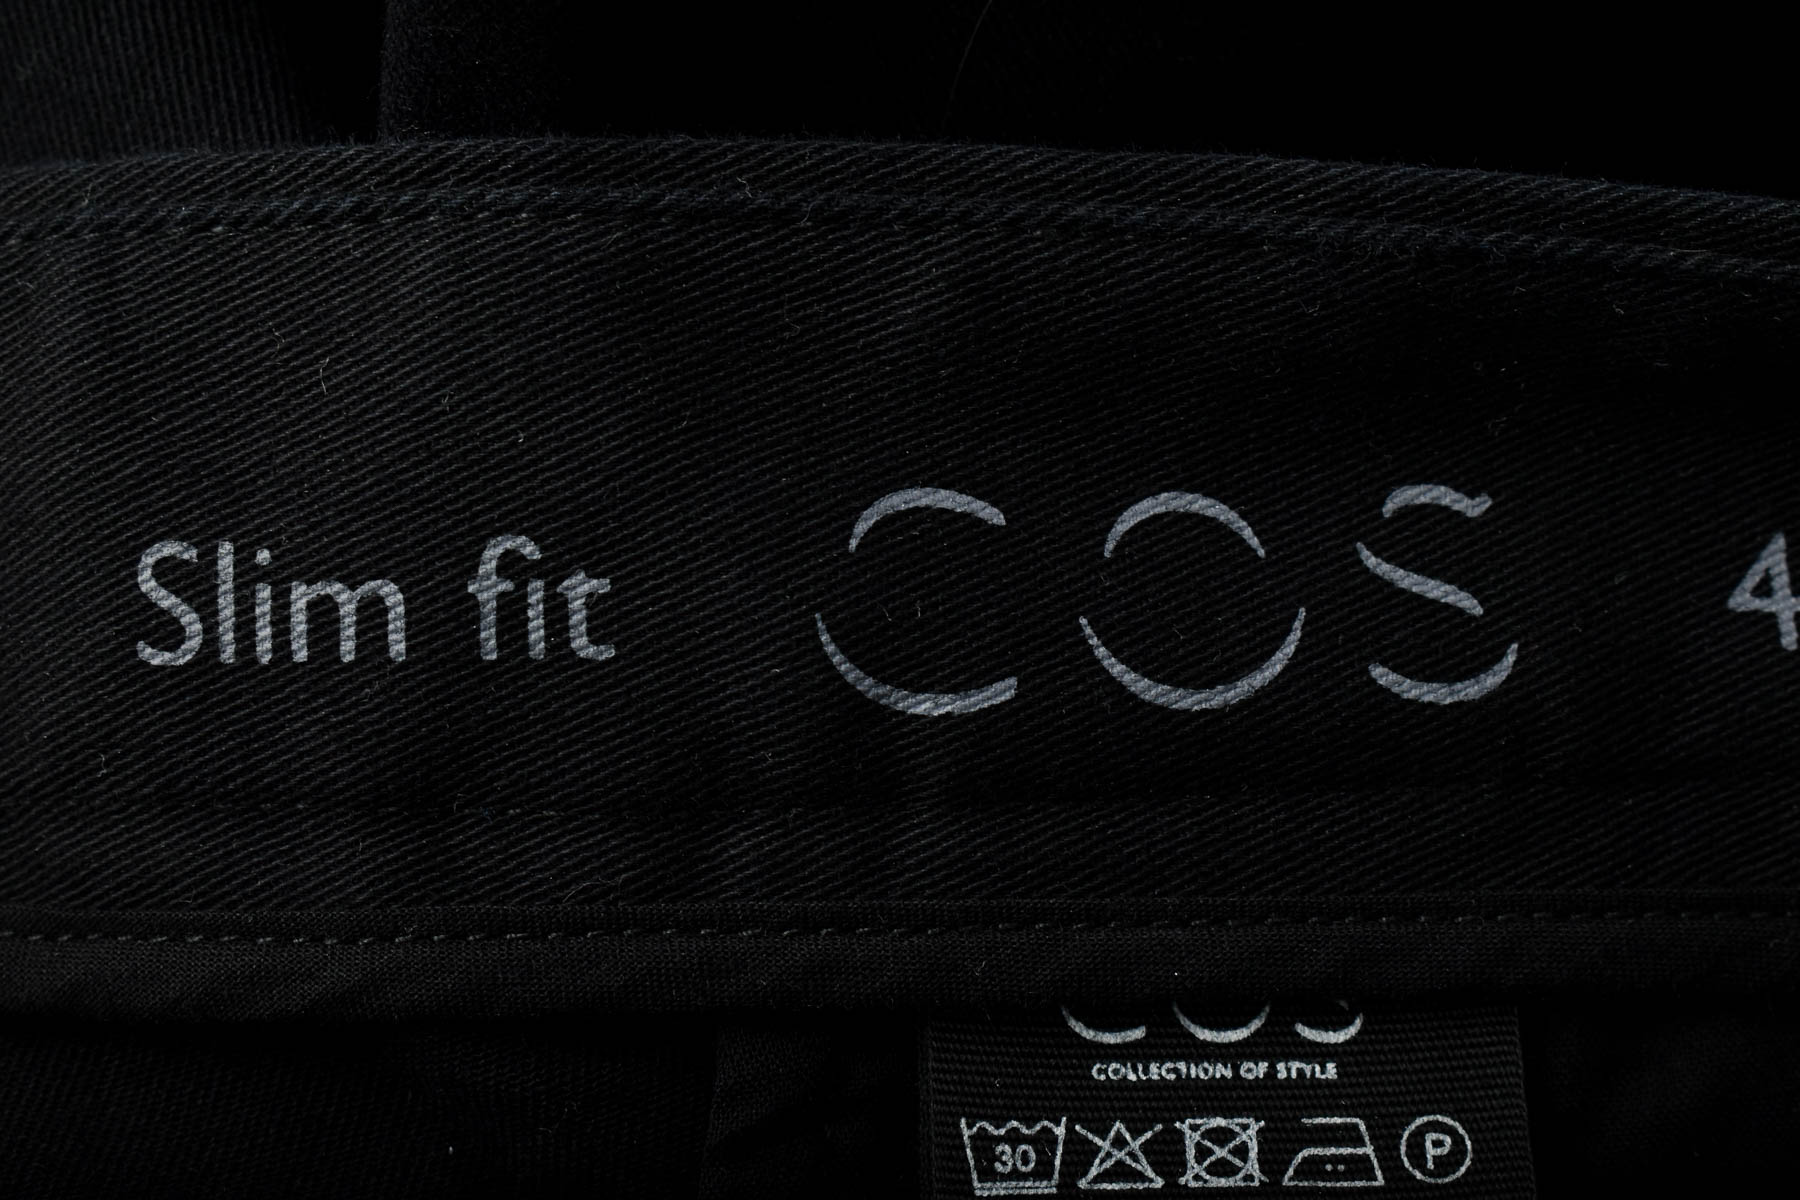 Мъжки панталон - COS - 2